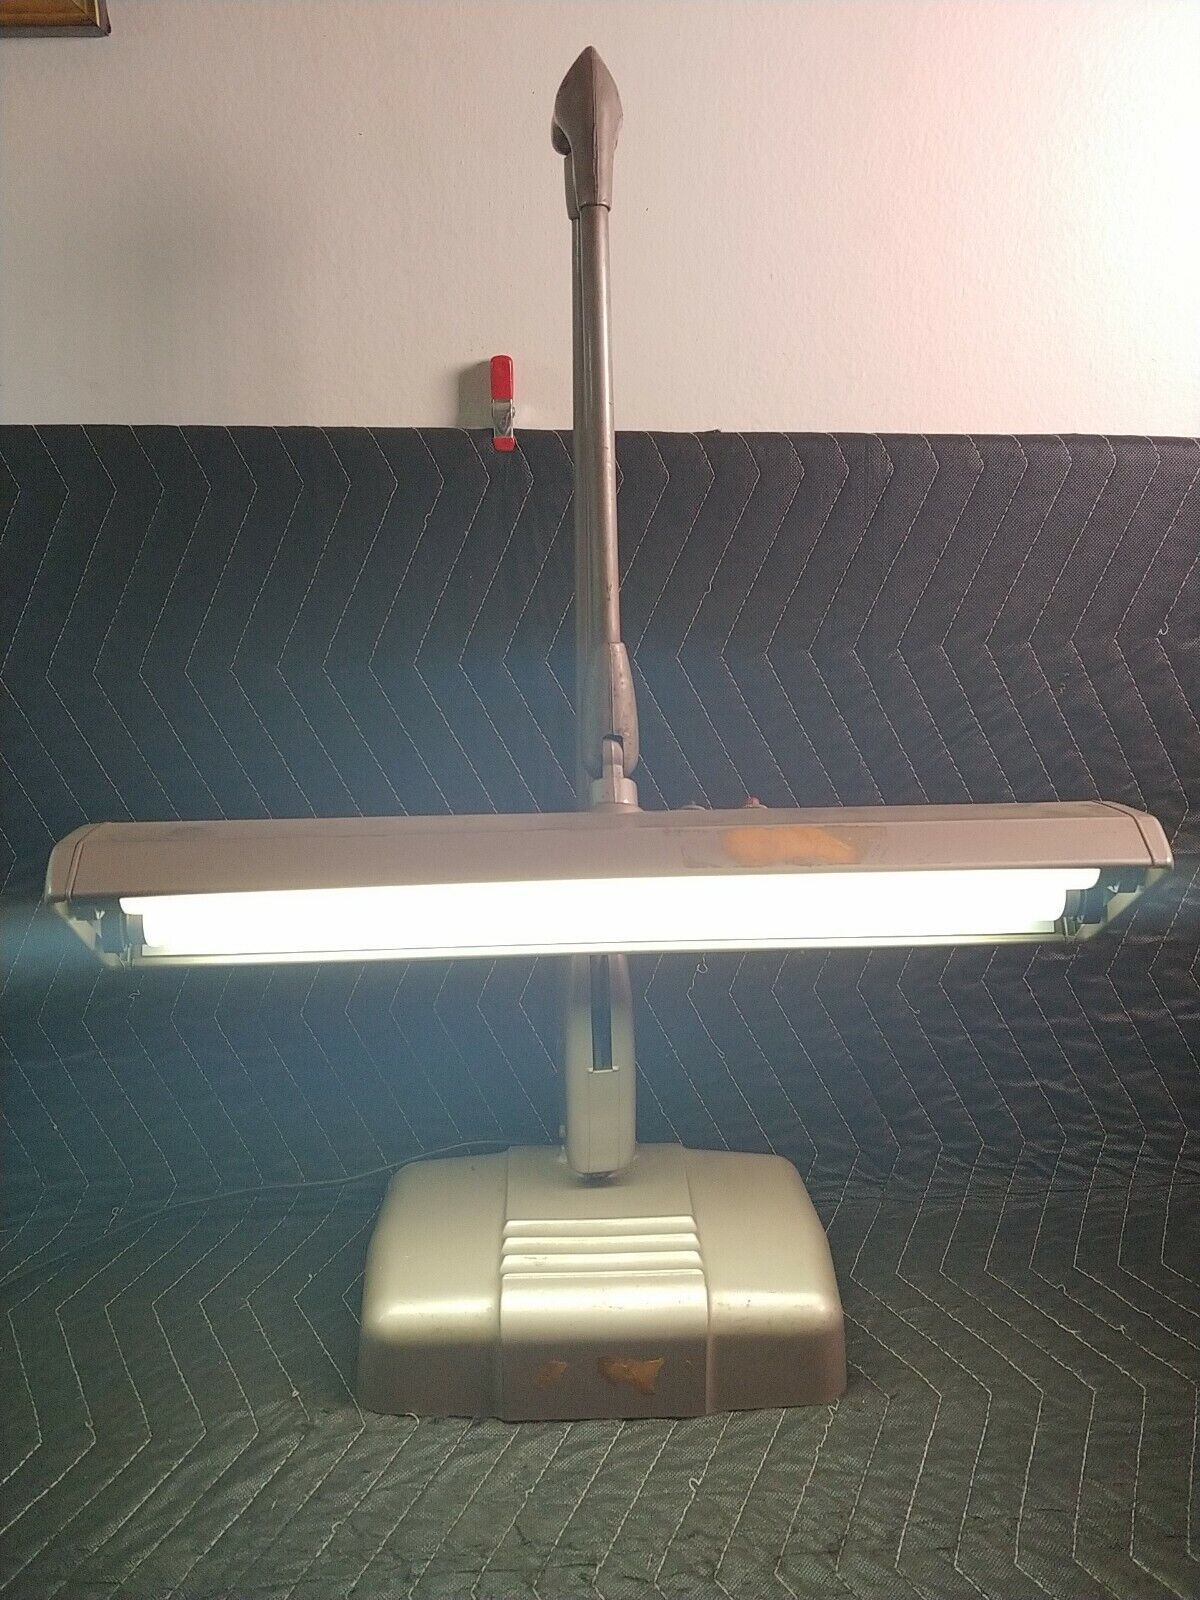 DAZOR Floating Fixture Articulating Desk Lamp Vintage Model 2324 Made In USA